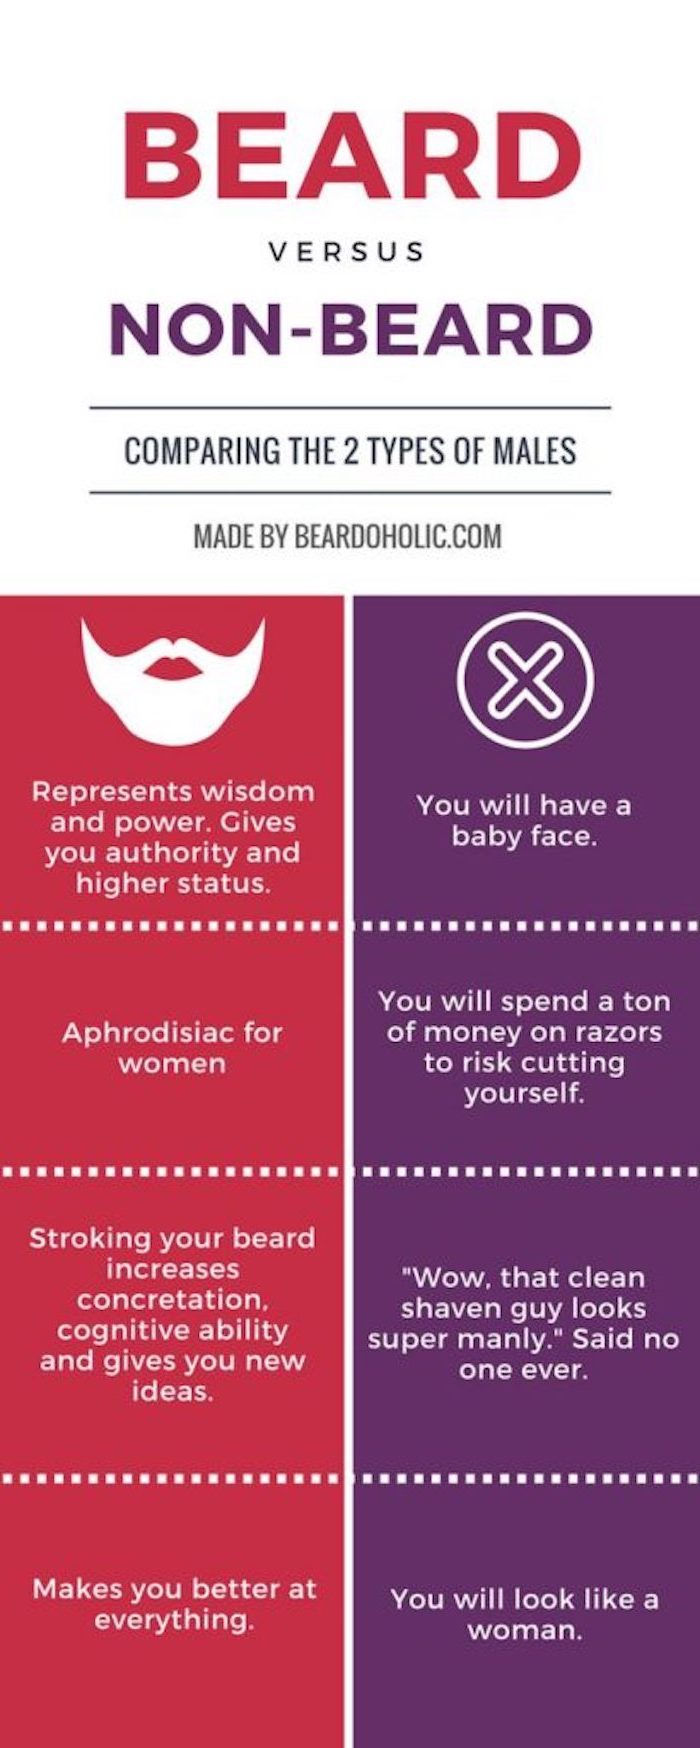 barbă compactă, cu sau fără barbă de ce ar trebui să aveți barbă sau nu, ceea ce preferați